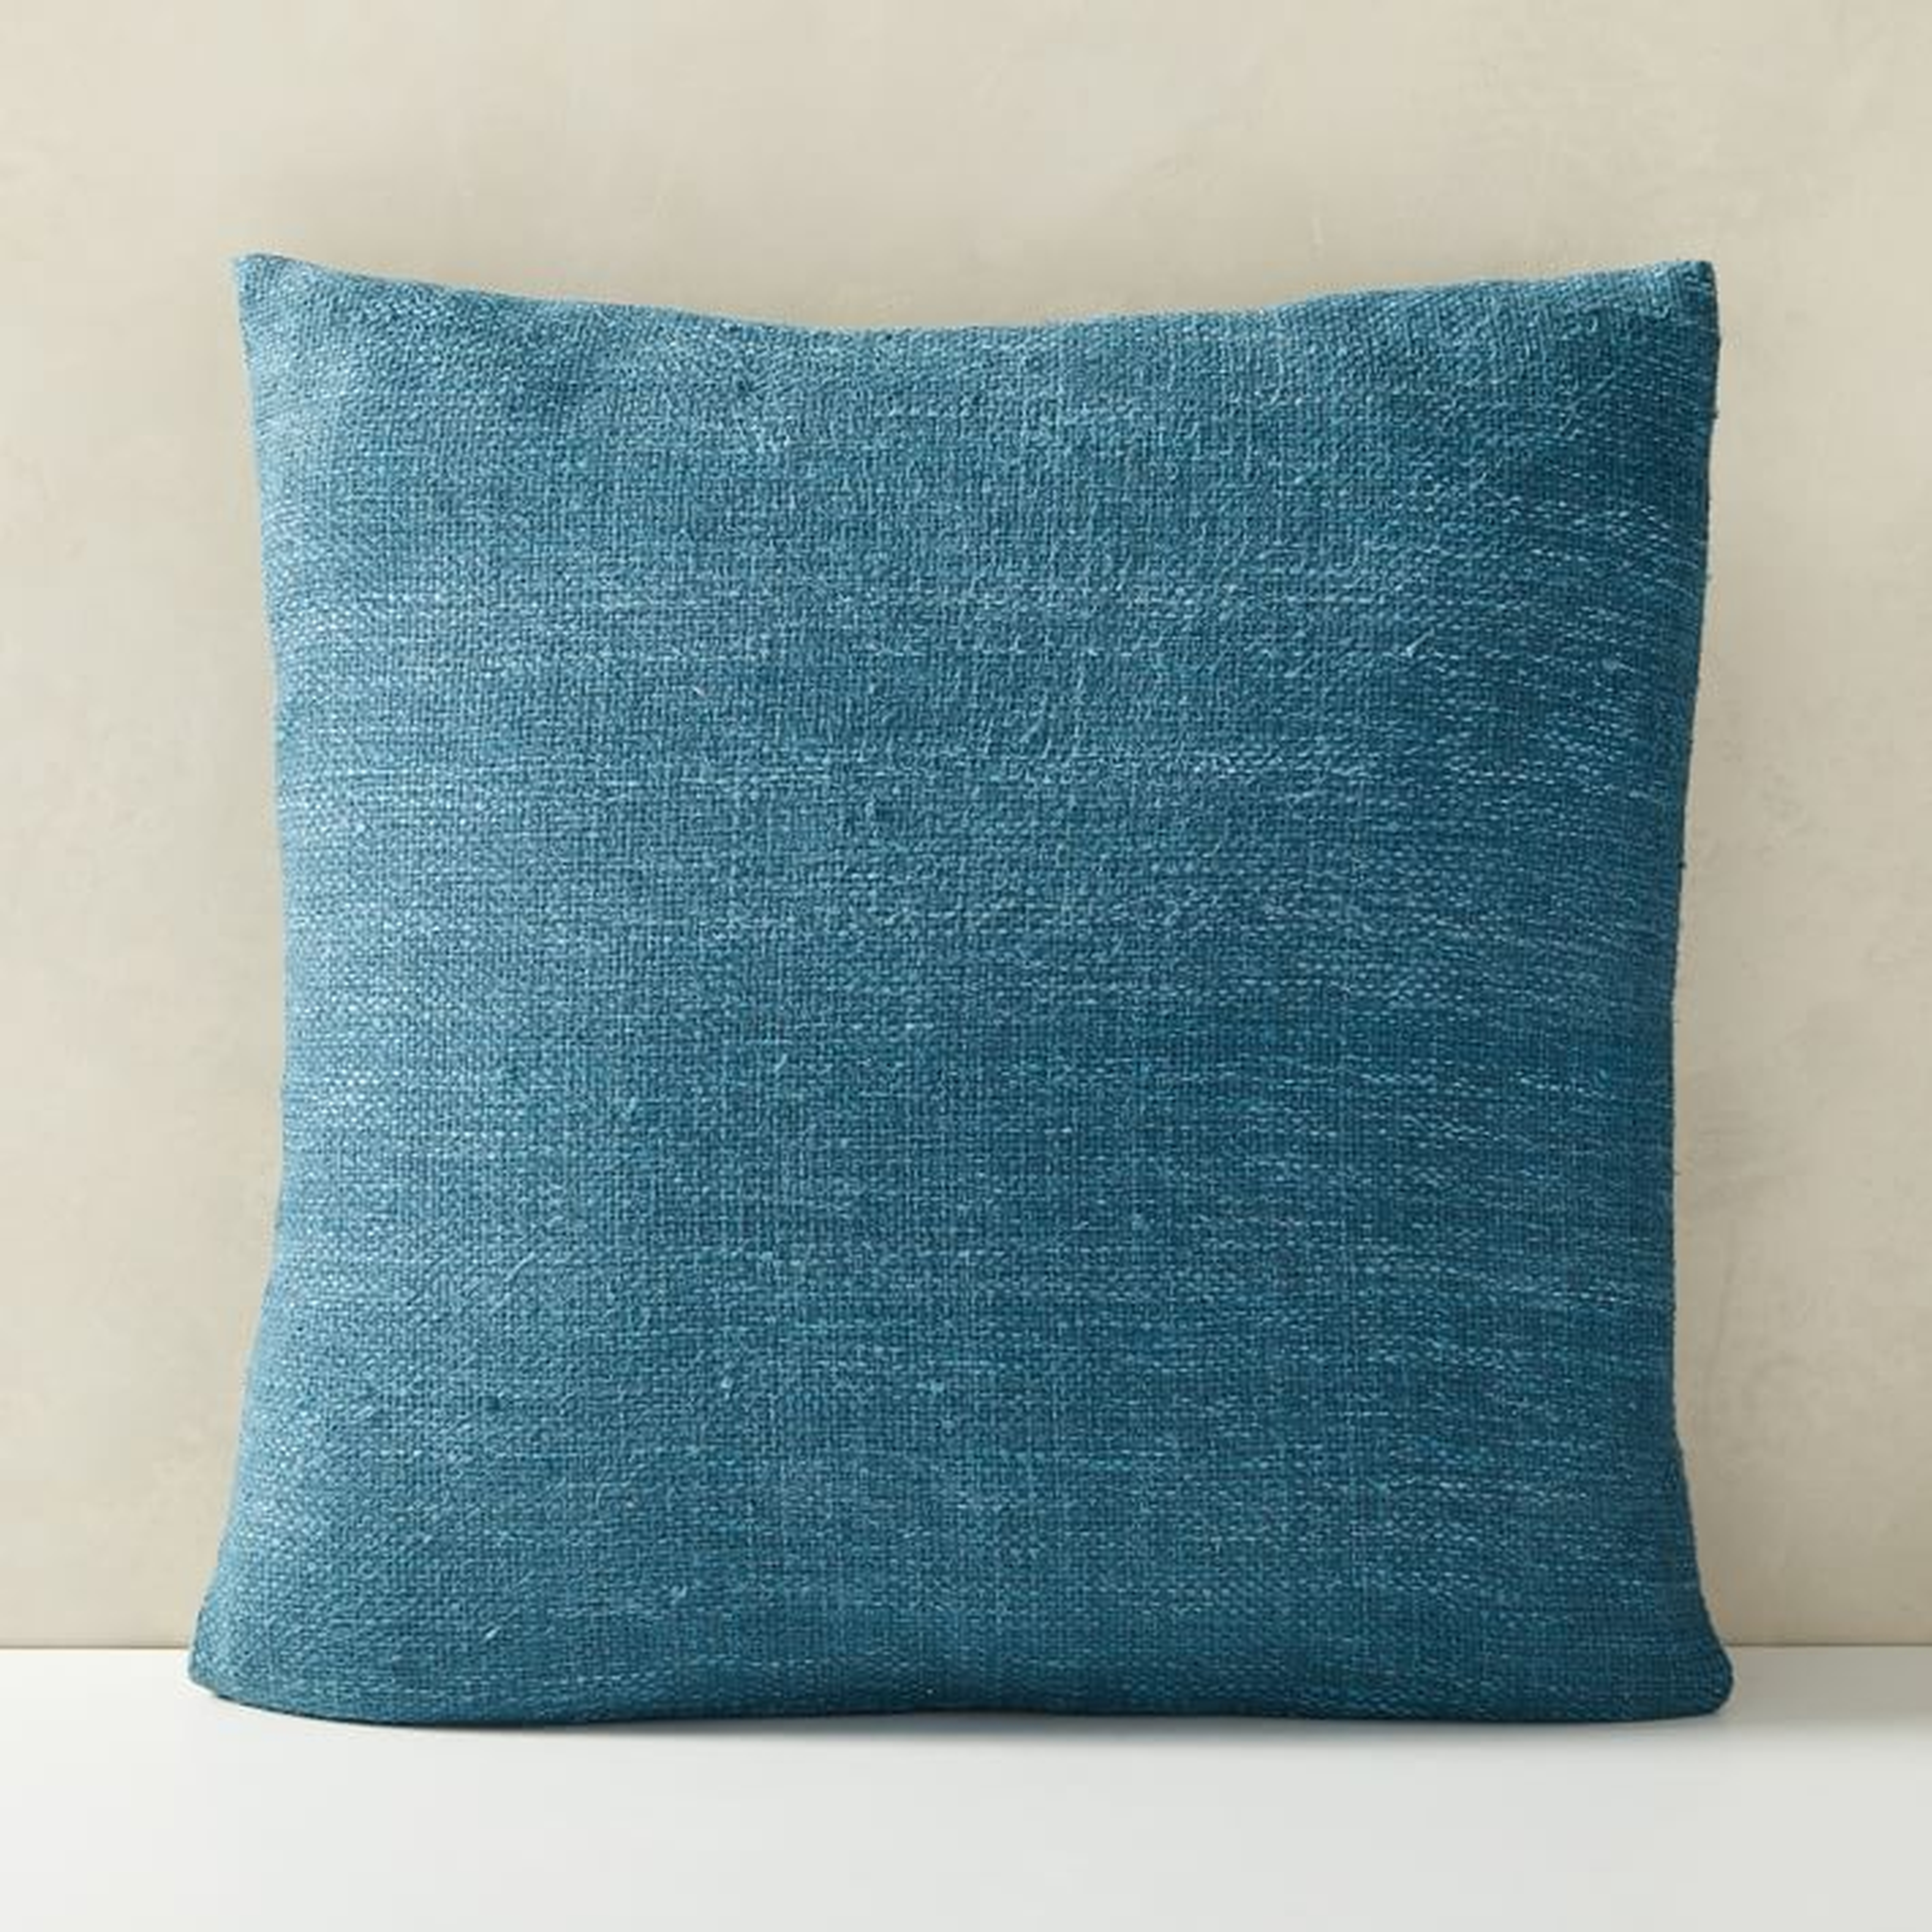 Silk Handloomed Pillow Cover , 20"x20", Blue Teal - West Elm